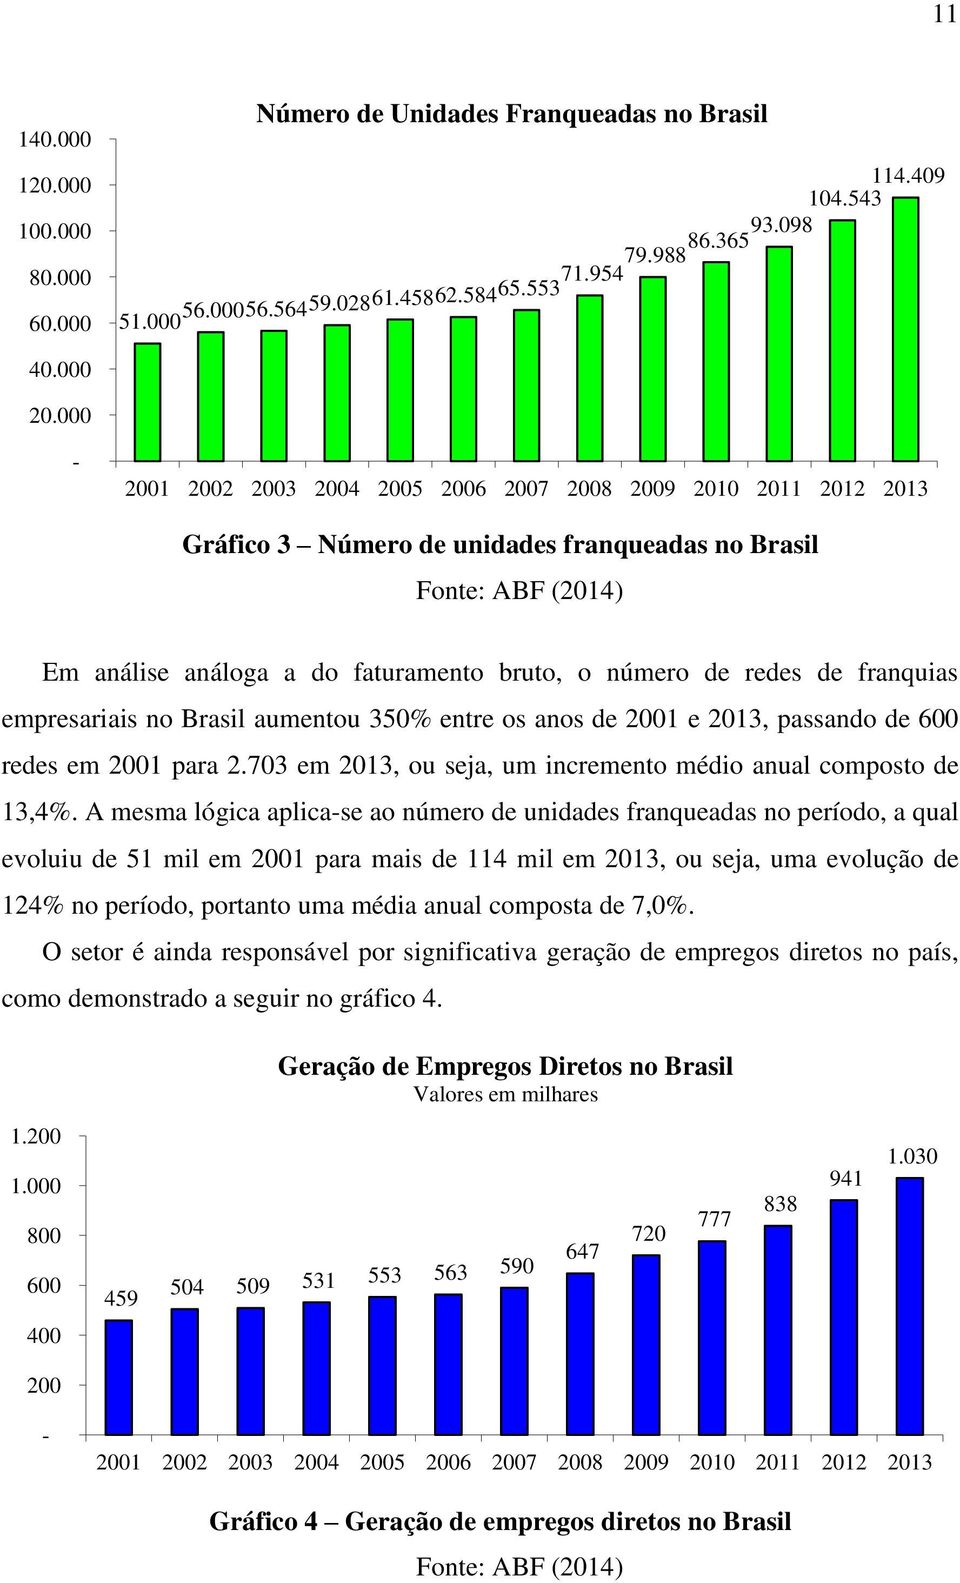 de franquias empresariais no Brasil aumentou 350% entre os anos de 2001 e 2013, passando de 600 redes em 2001 para 2.703 em 2013, ou seja, um incremento médio anual composto de 13,4%.